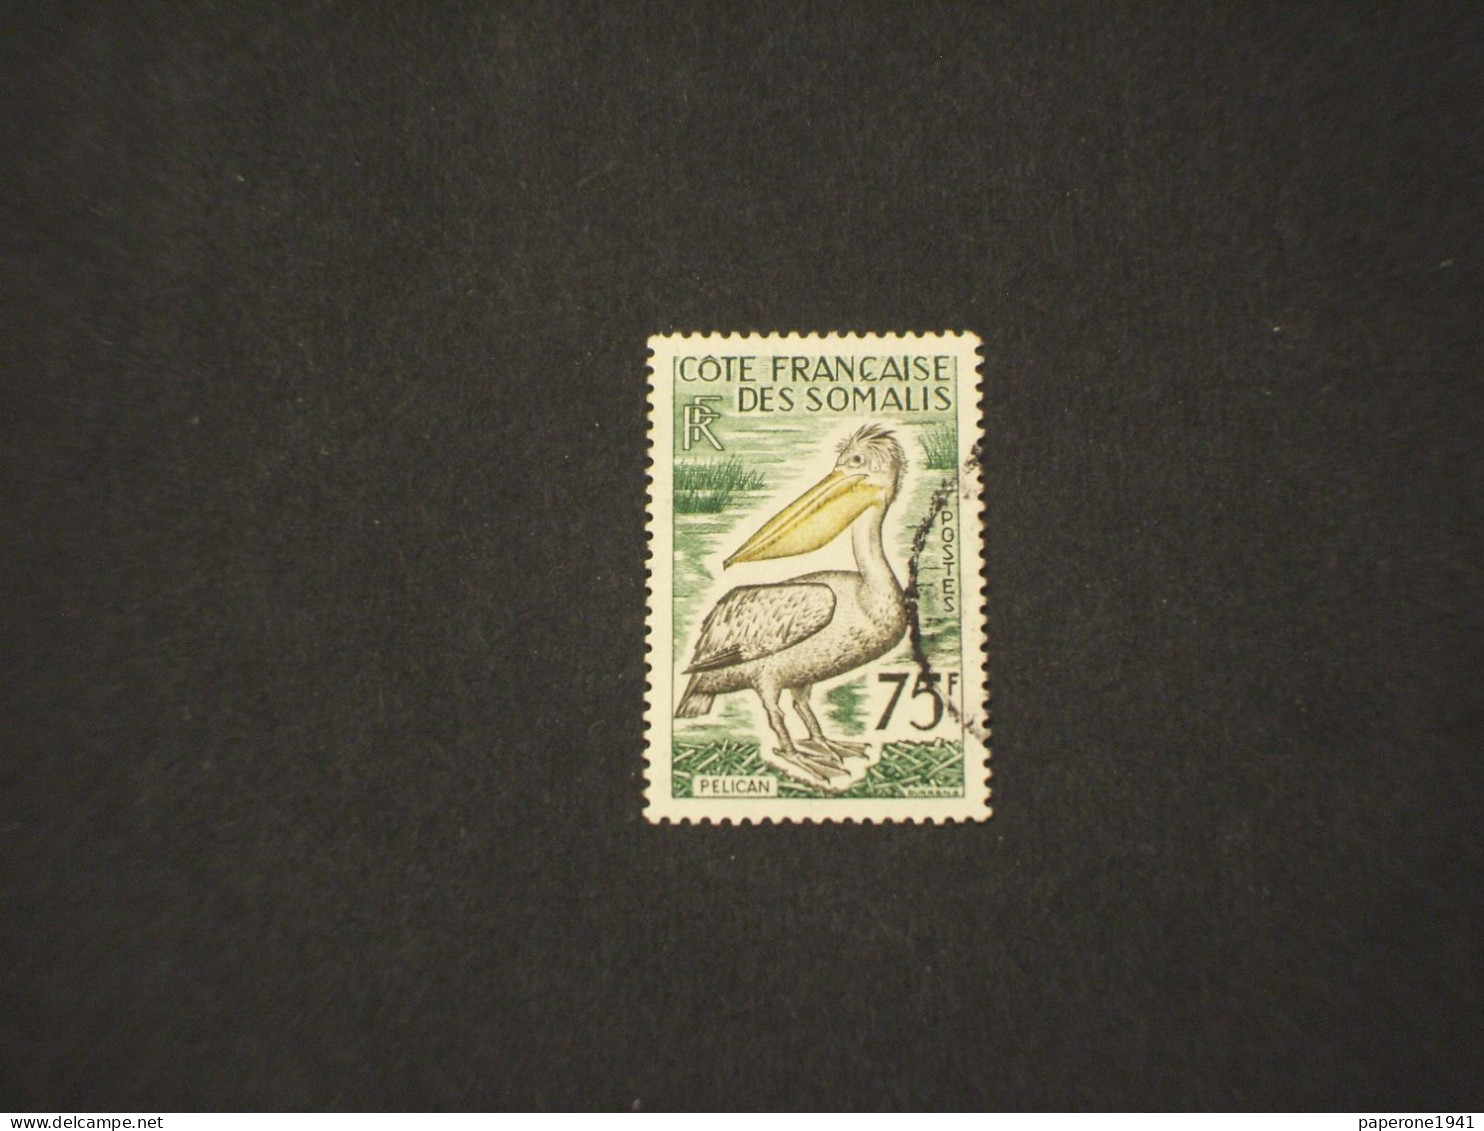 COSTA FRANCESE DEI SOMALI-COTE FRANCAISE DES SOMALIS - 1959/60 UCCELLO/PELLICANO 75 F. - TIMBRATO/USED - Gebraucht